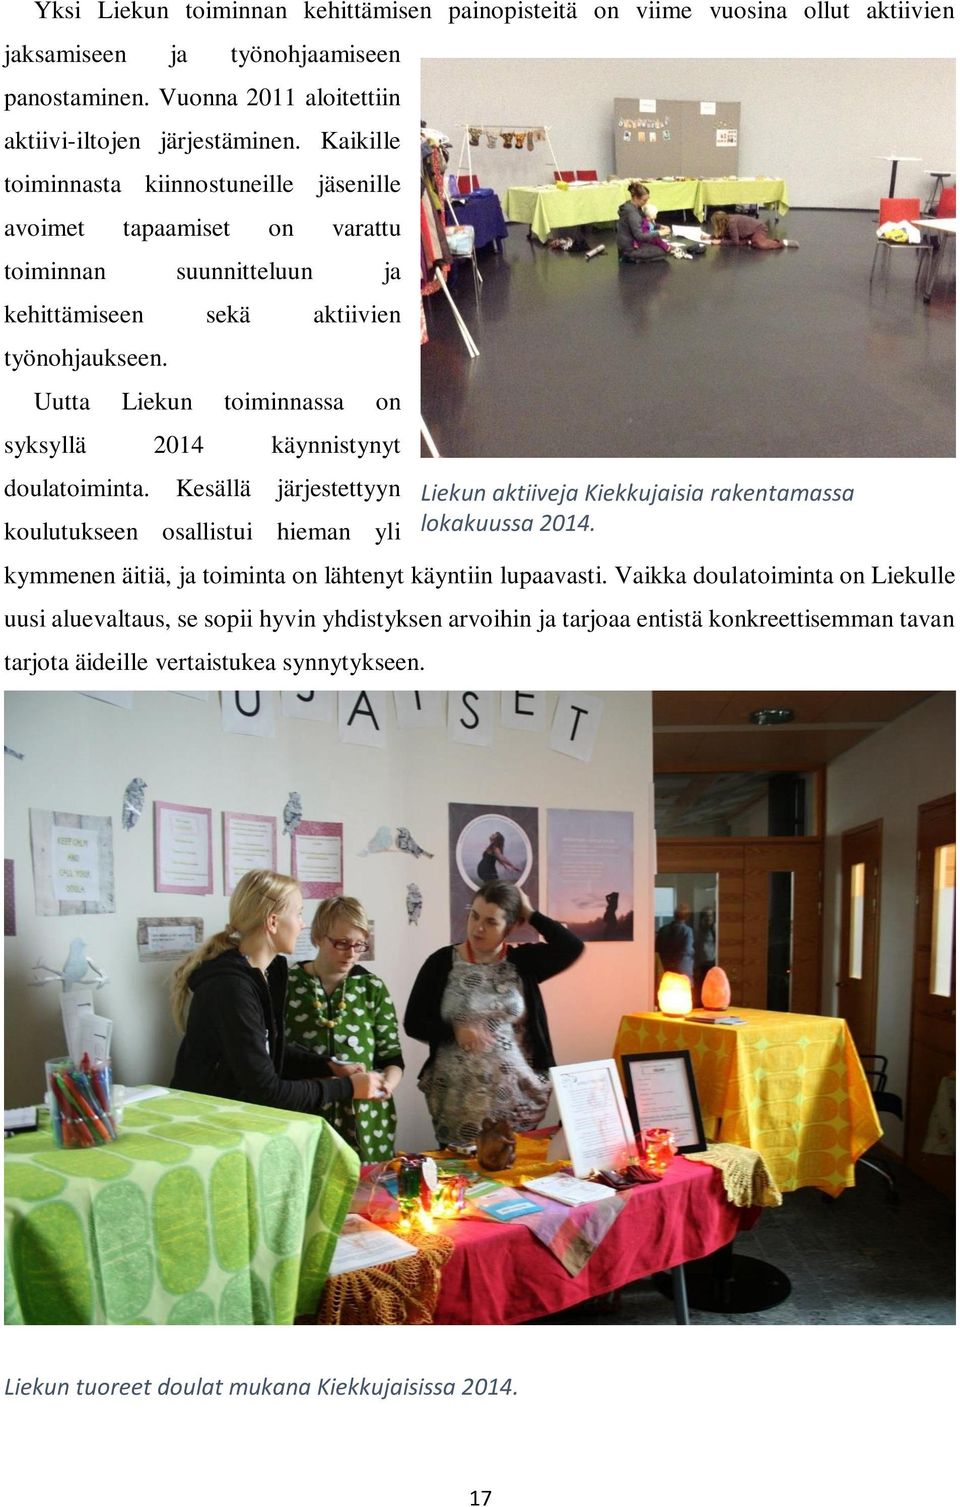 Uutta Liekun toiminnassa on syksyllä 2014 käynnistynyt doulatoiminta. Kesällä järjestettyyn koulutukseen osallistui hieman yli kymmenen äitiä, ja toiminta on lähtenyt käyntiin lupaavasti.